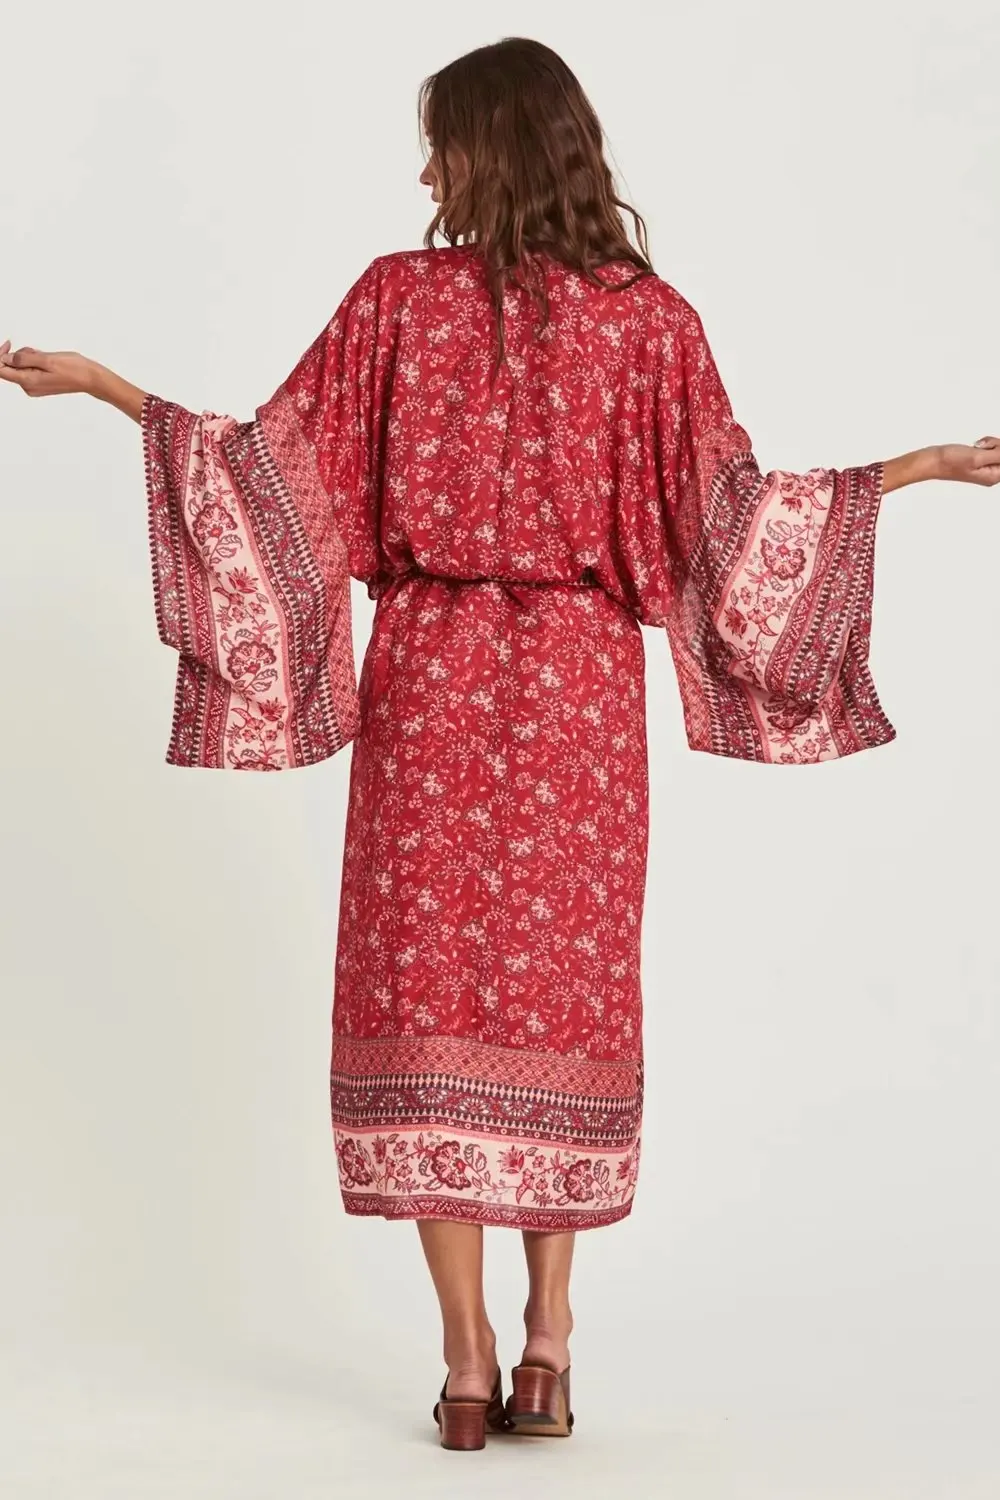 Богемный Вдохновленный длинный кимоно Женская блузка с цветочным принтом кимоно рукав летний кардиган пляжные женские топы Cover Up blusas gypsy